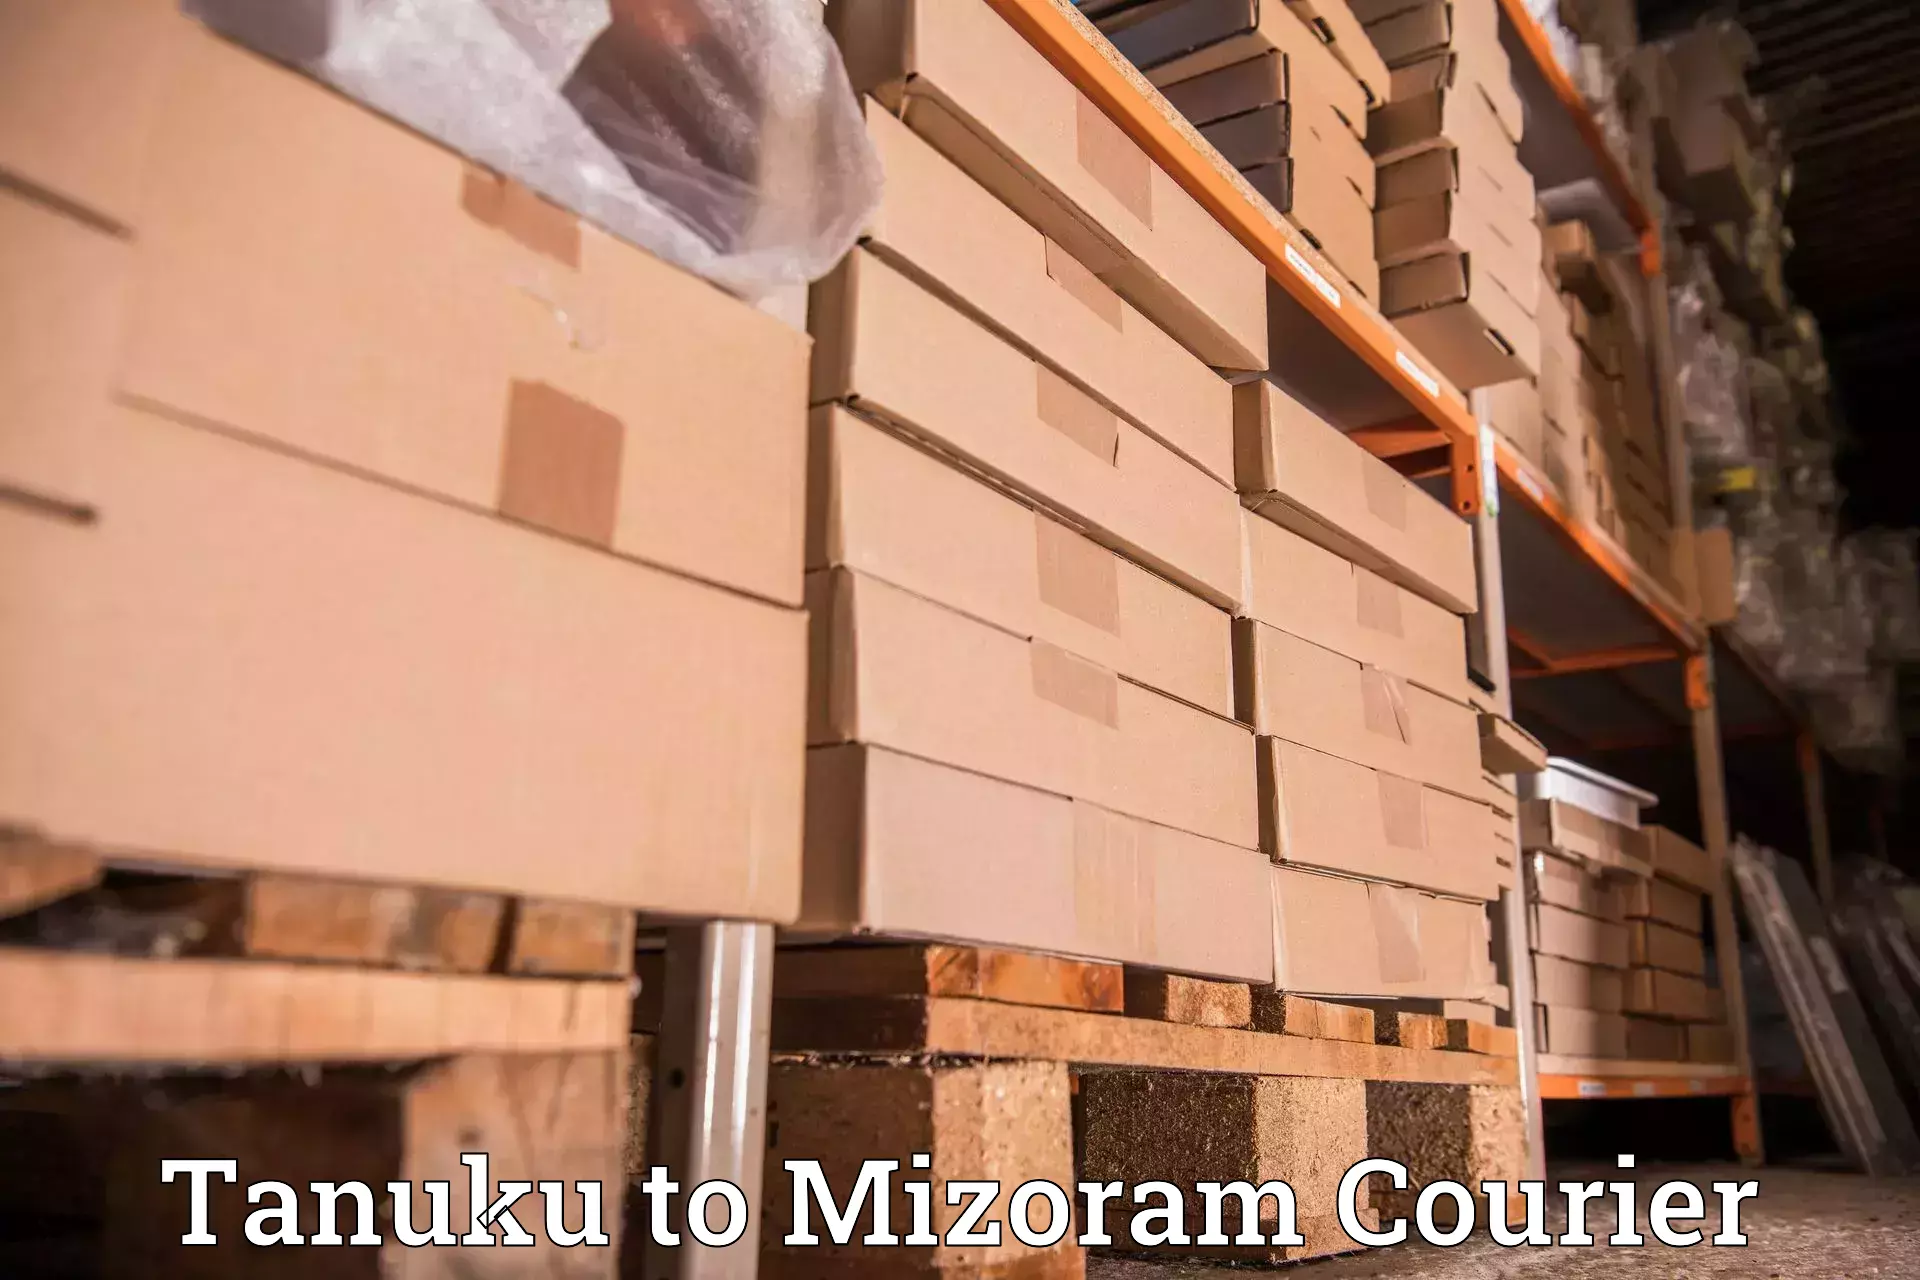 Weekend courier service Tanuku to Mizoram